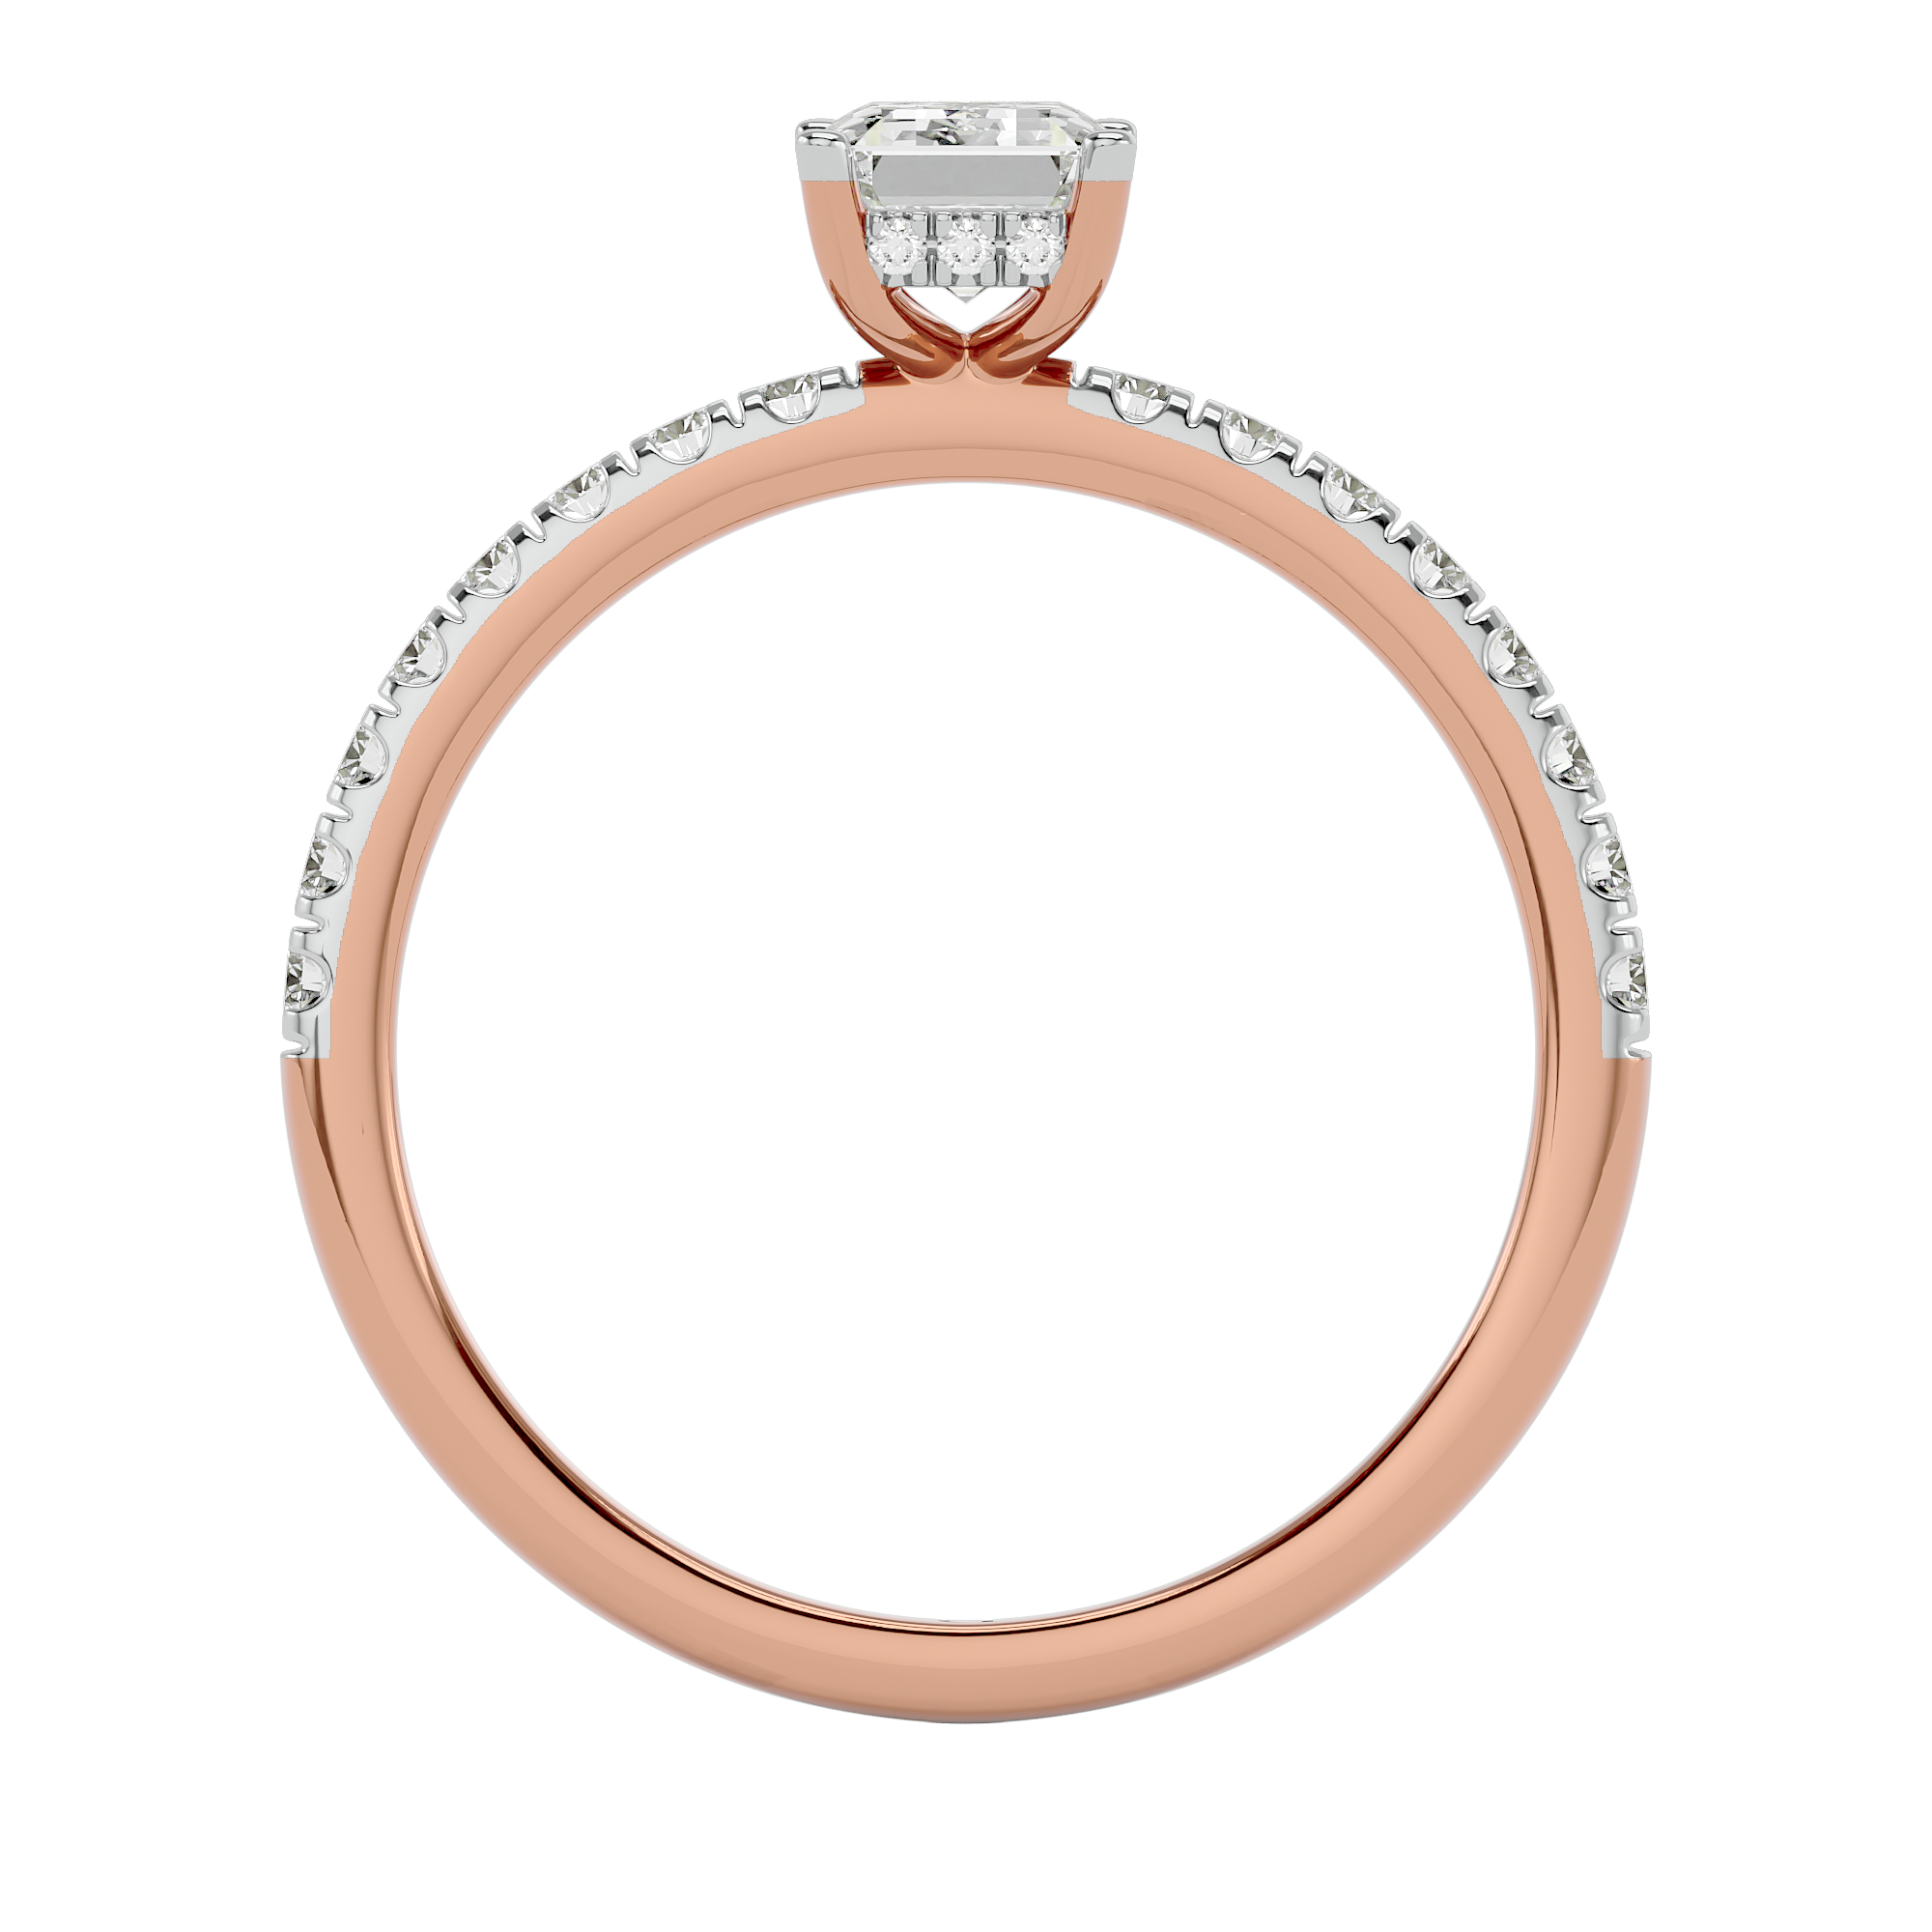 1.07 Ct Solitaire Emerald Cut Diamond Ring in Rose Gold - Blu Diamonds 